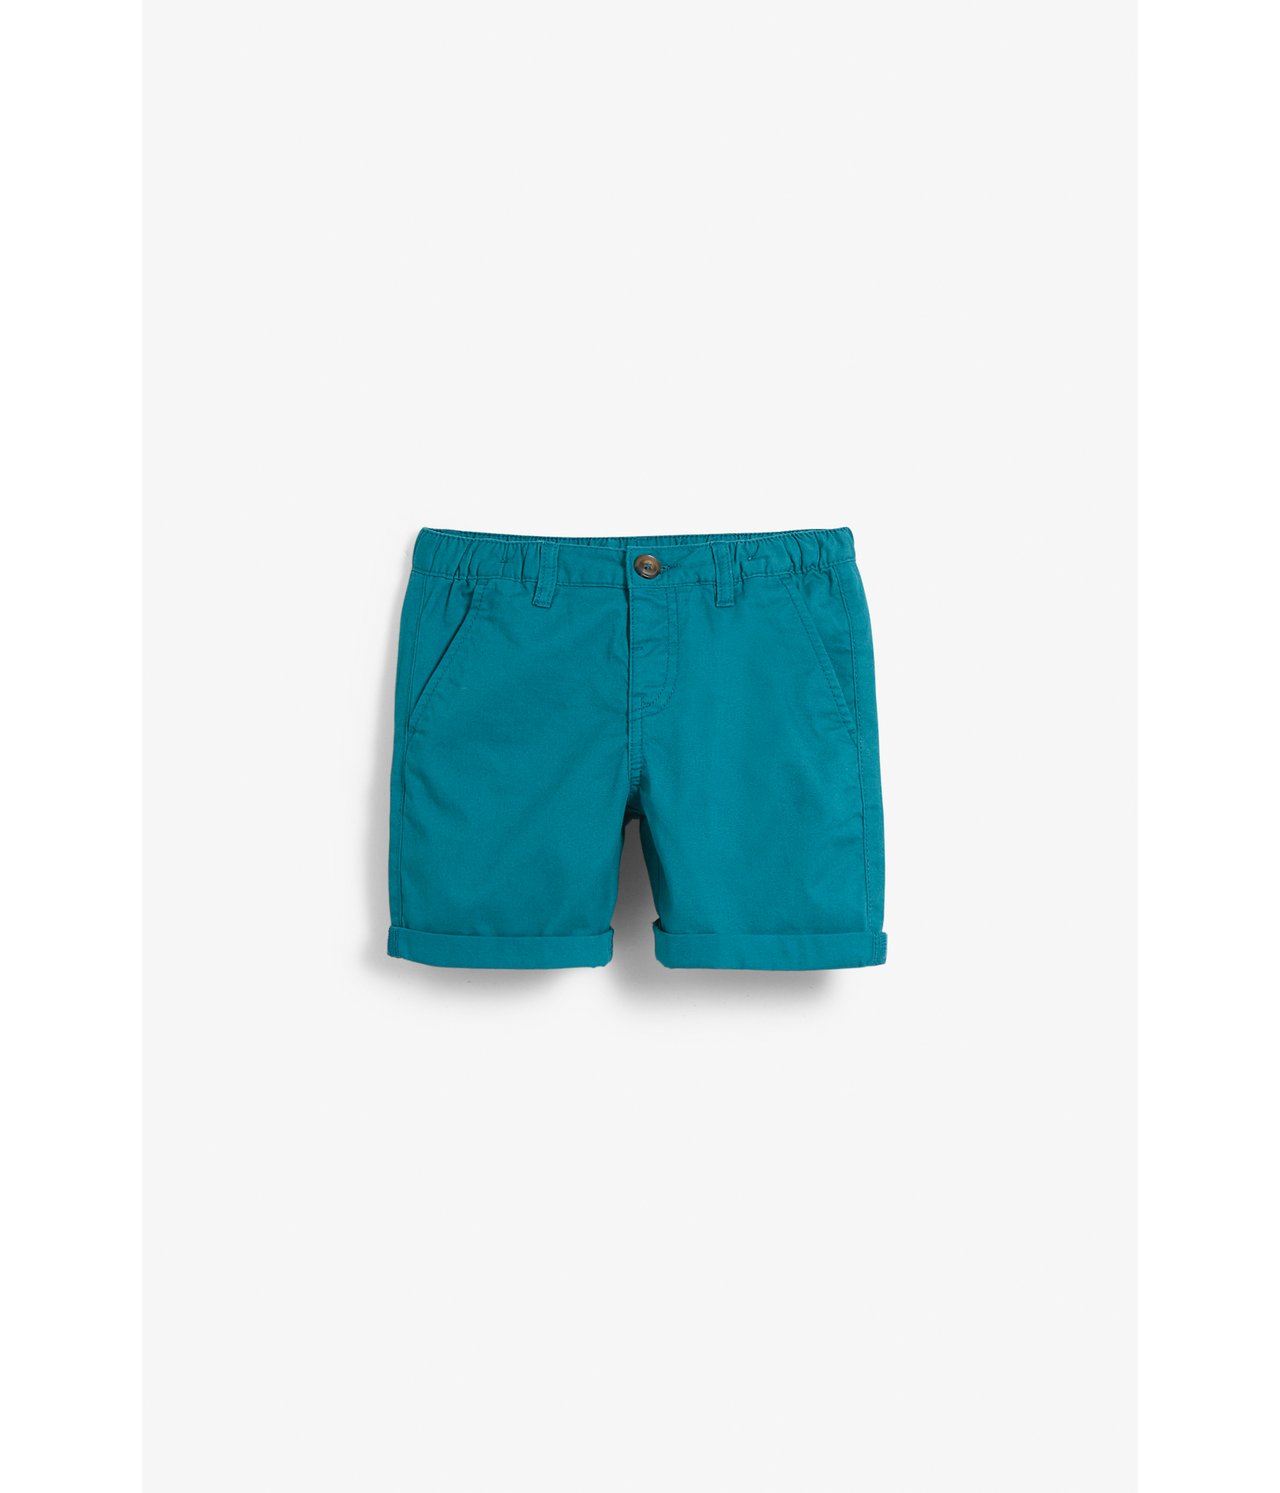 Vevd shorts - Grønn - 5